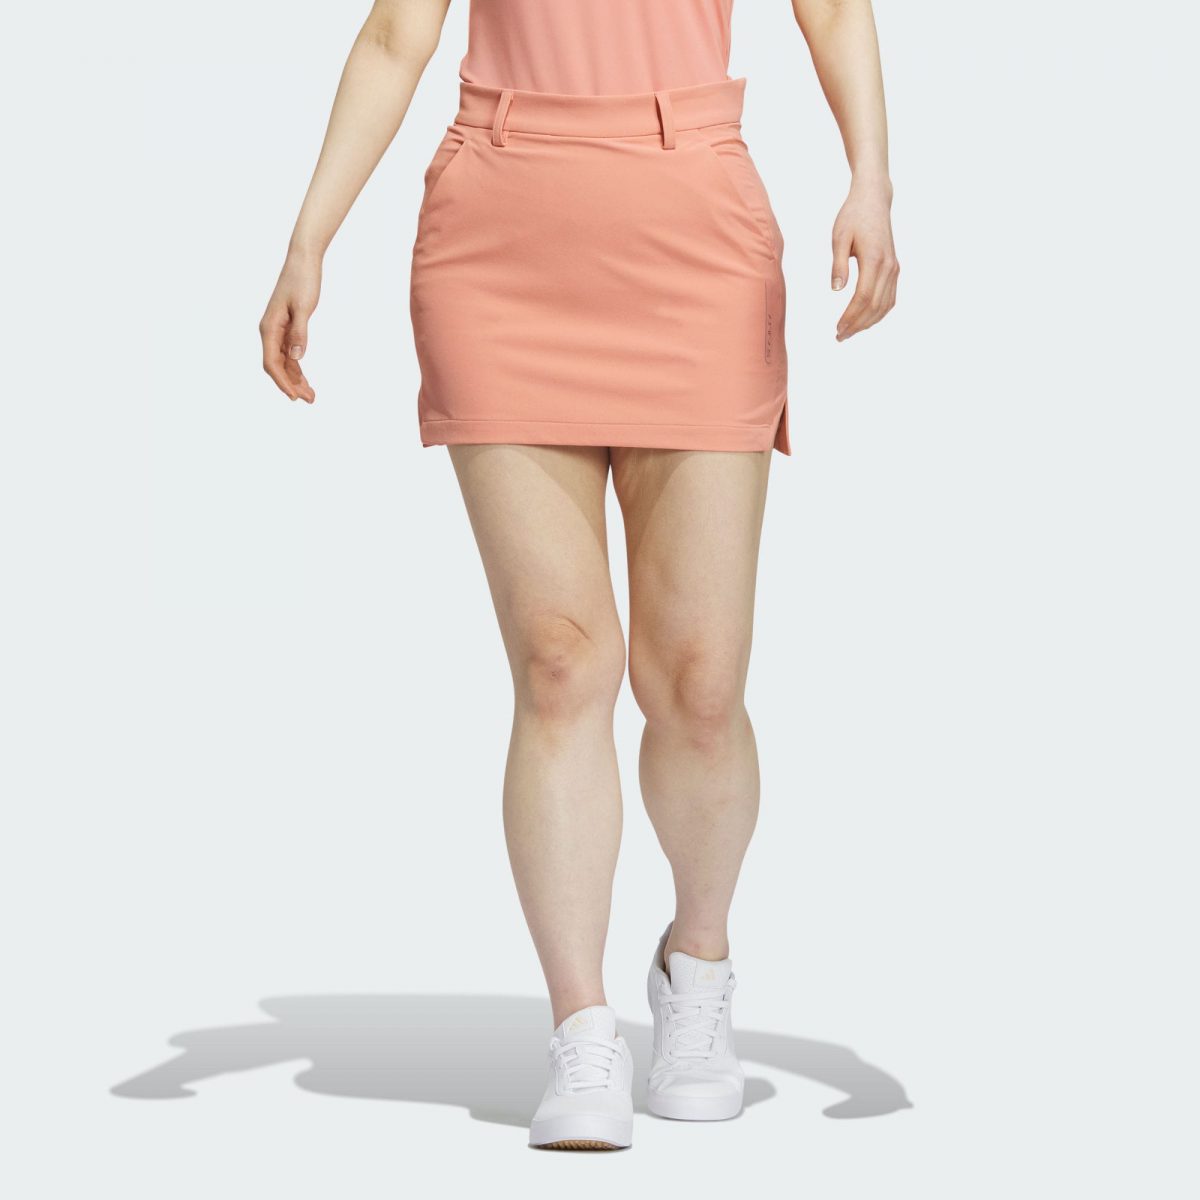 Женская юбка adidas FOUR-WAY STRETCH SKIRT фото